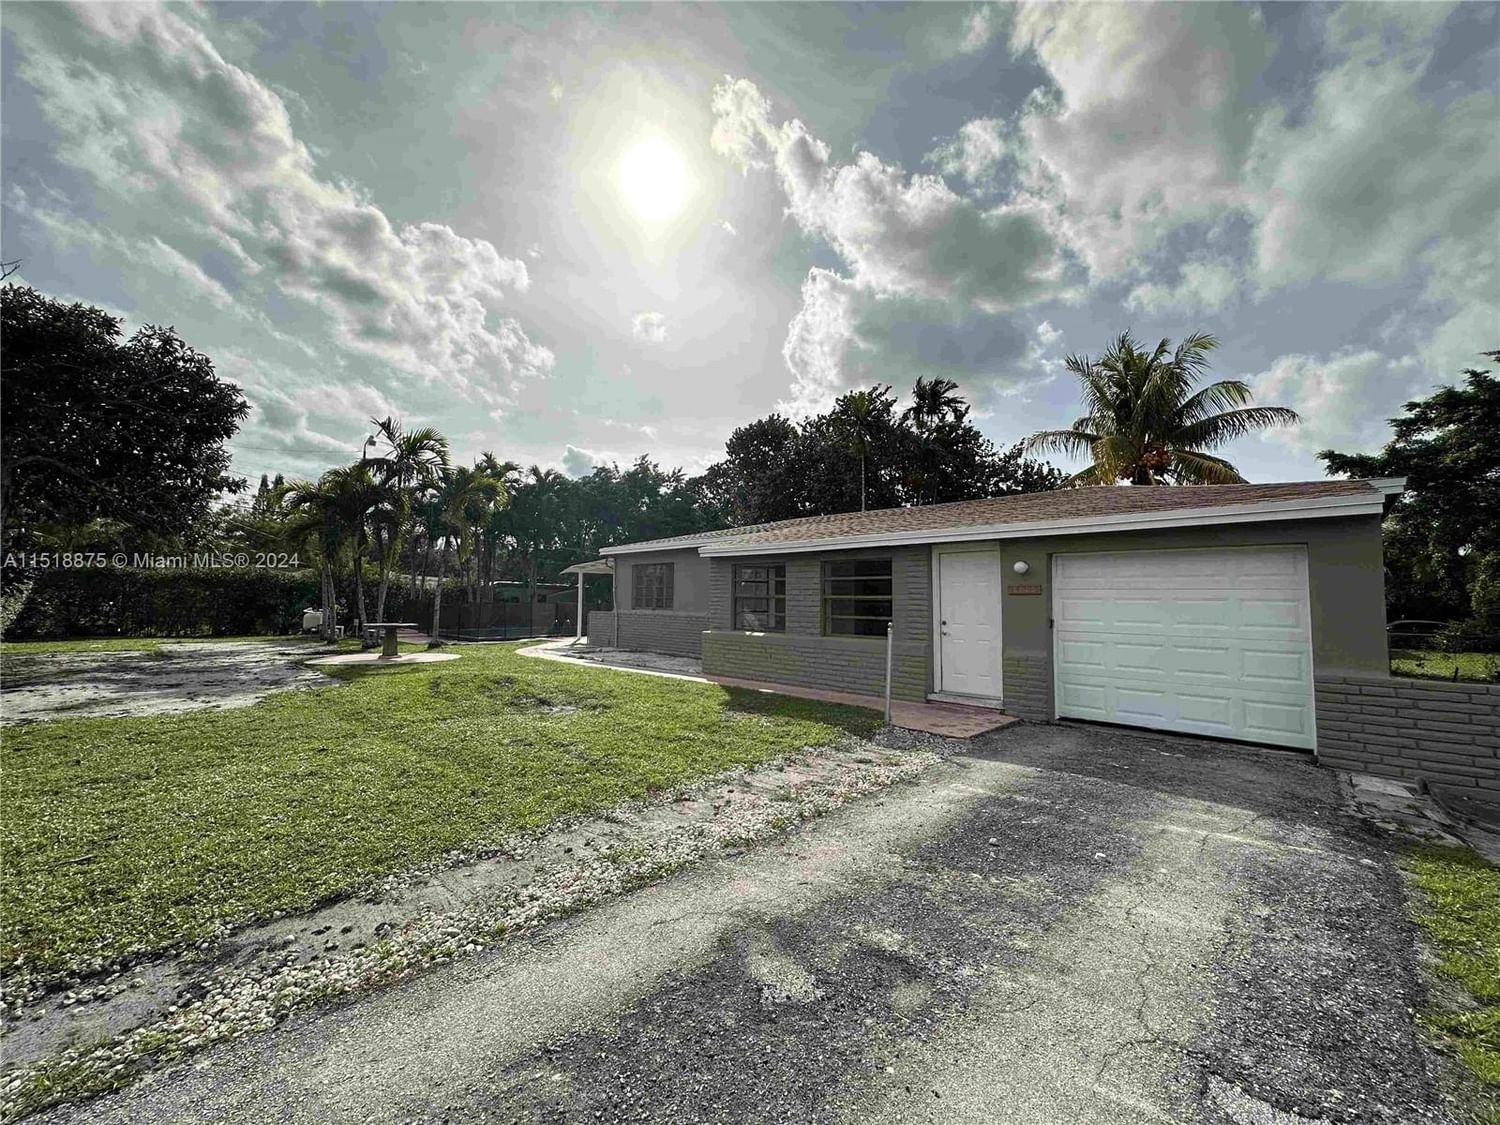 Real estate property located at 14330 5th Ave, Miami-Dade County, BRANDON PARK SEC A, Miami, FL